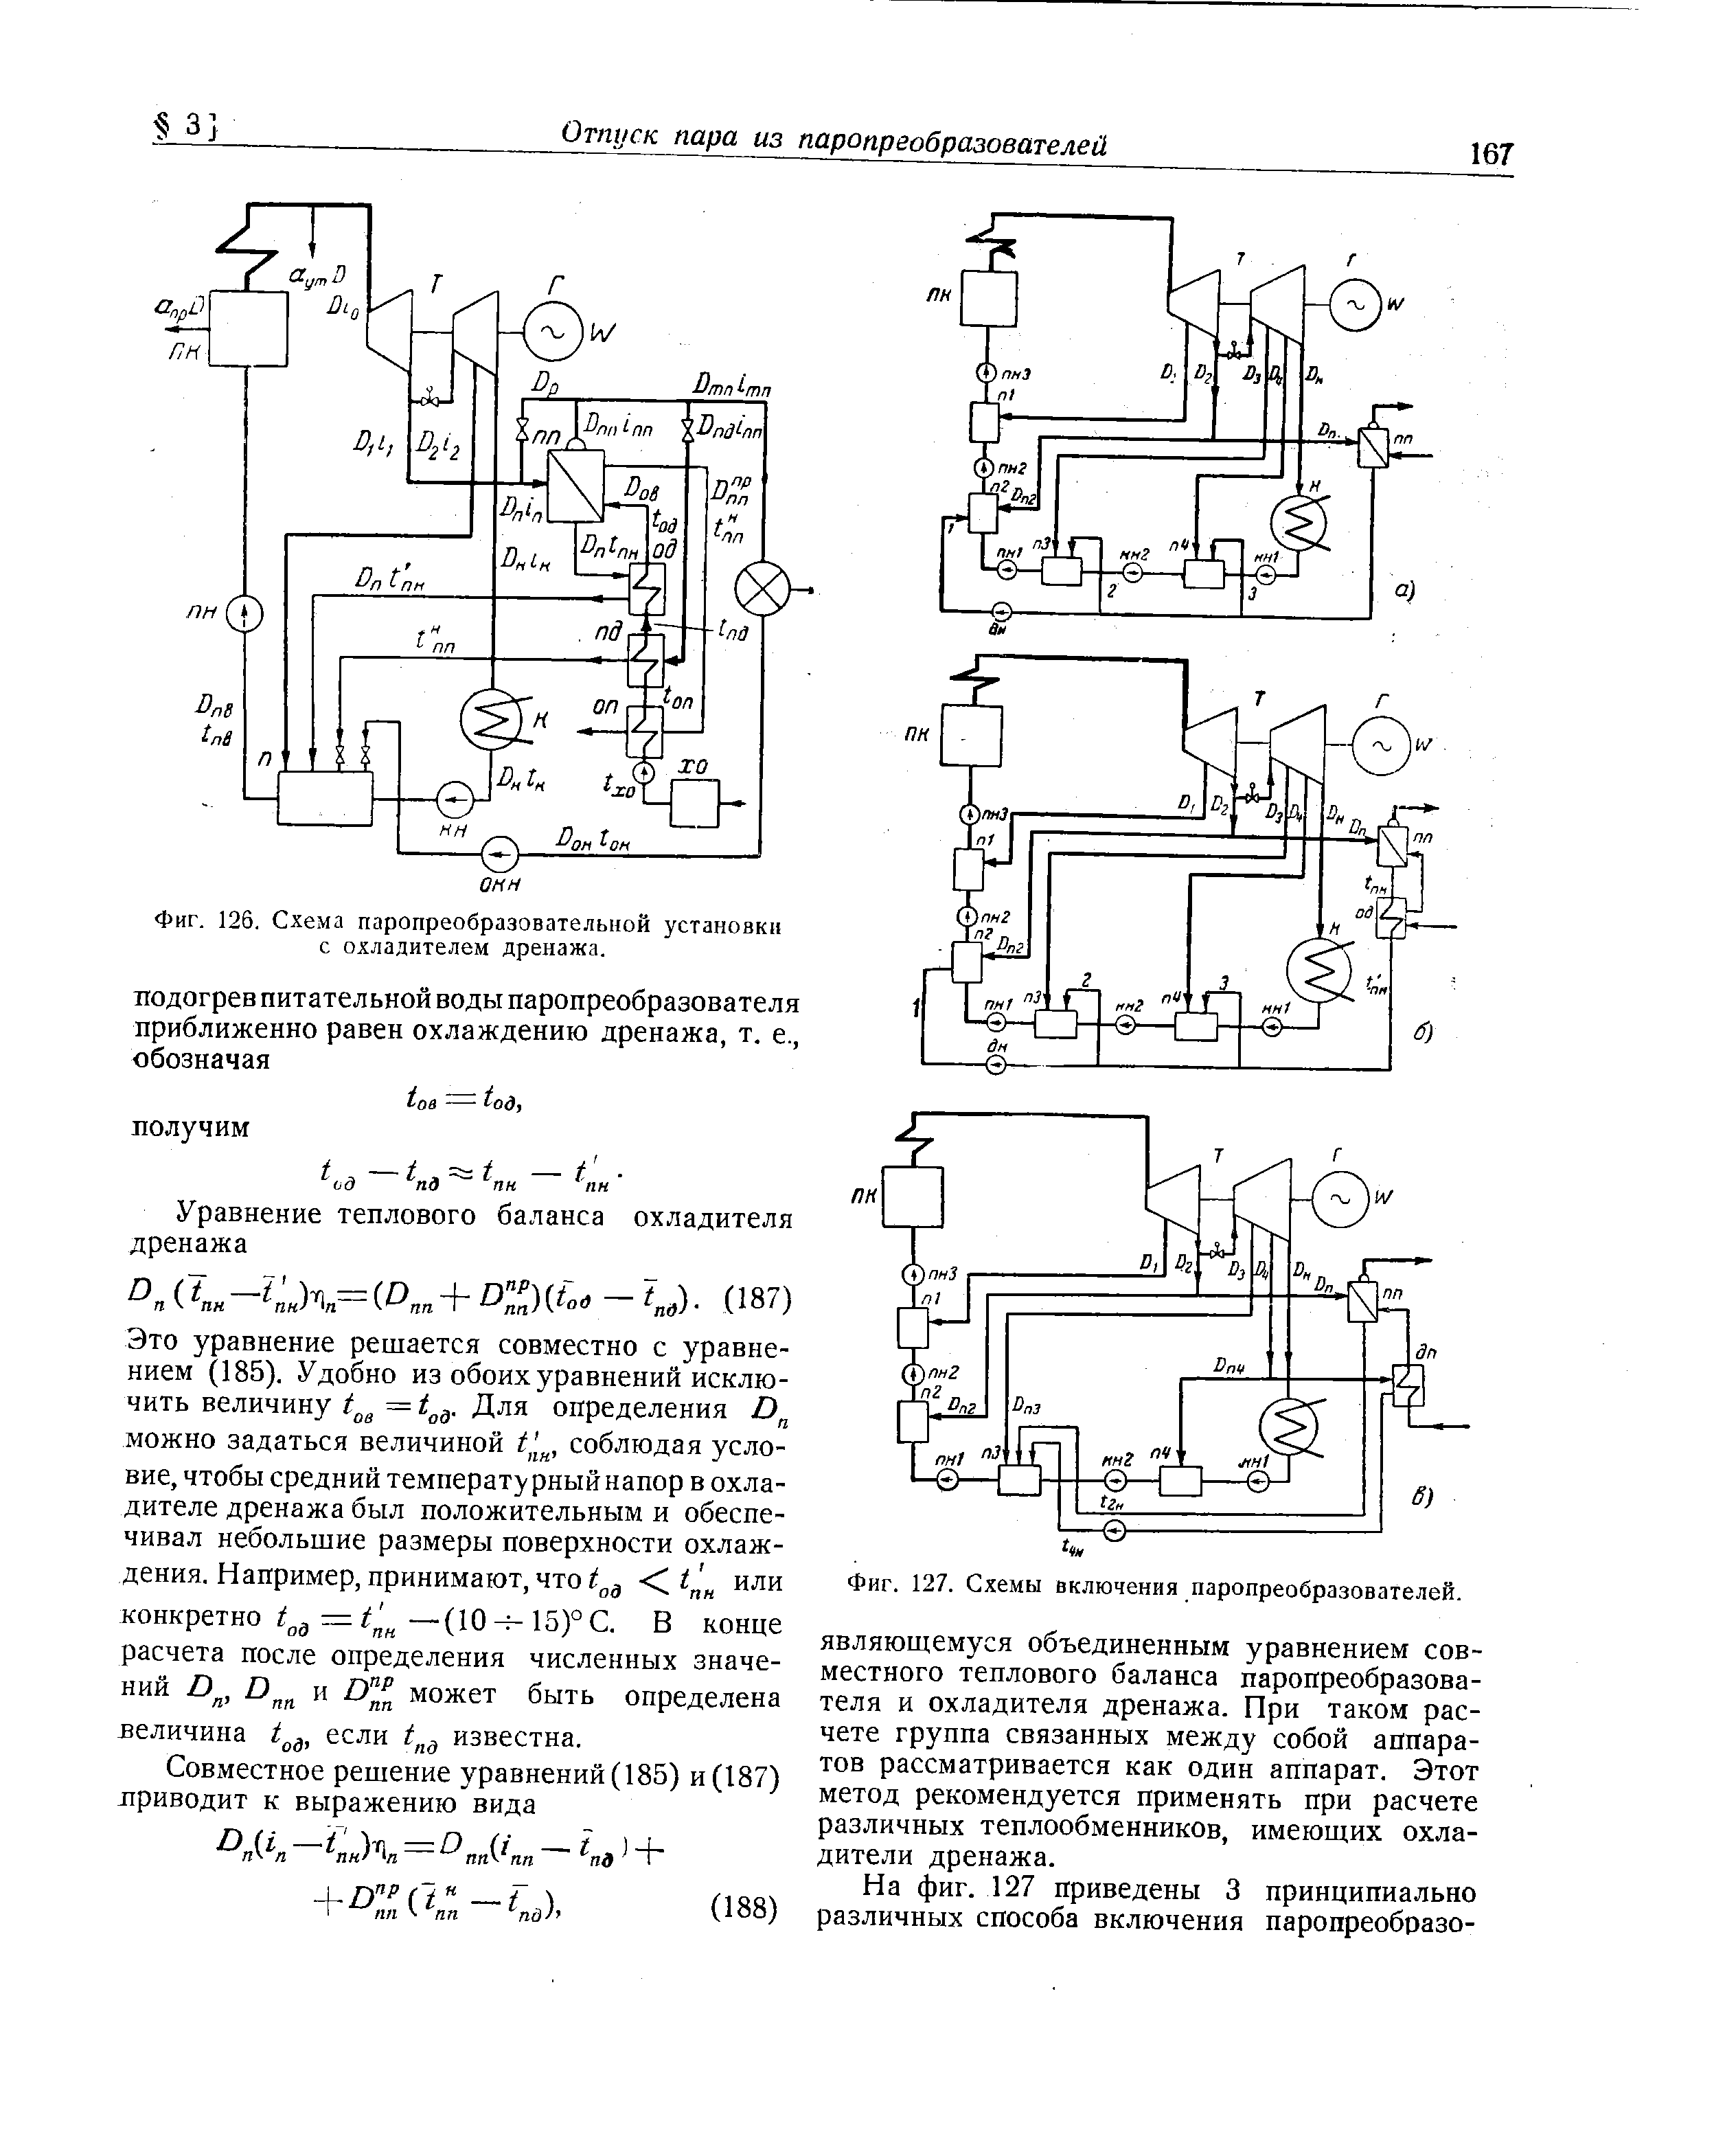 Фиг. 126. Схема паропреобразовательной установки с охладителем дренажа.
